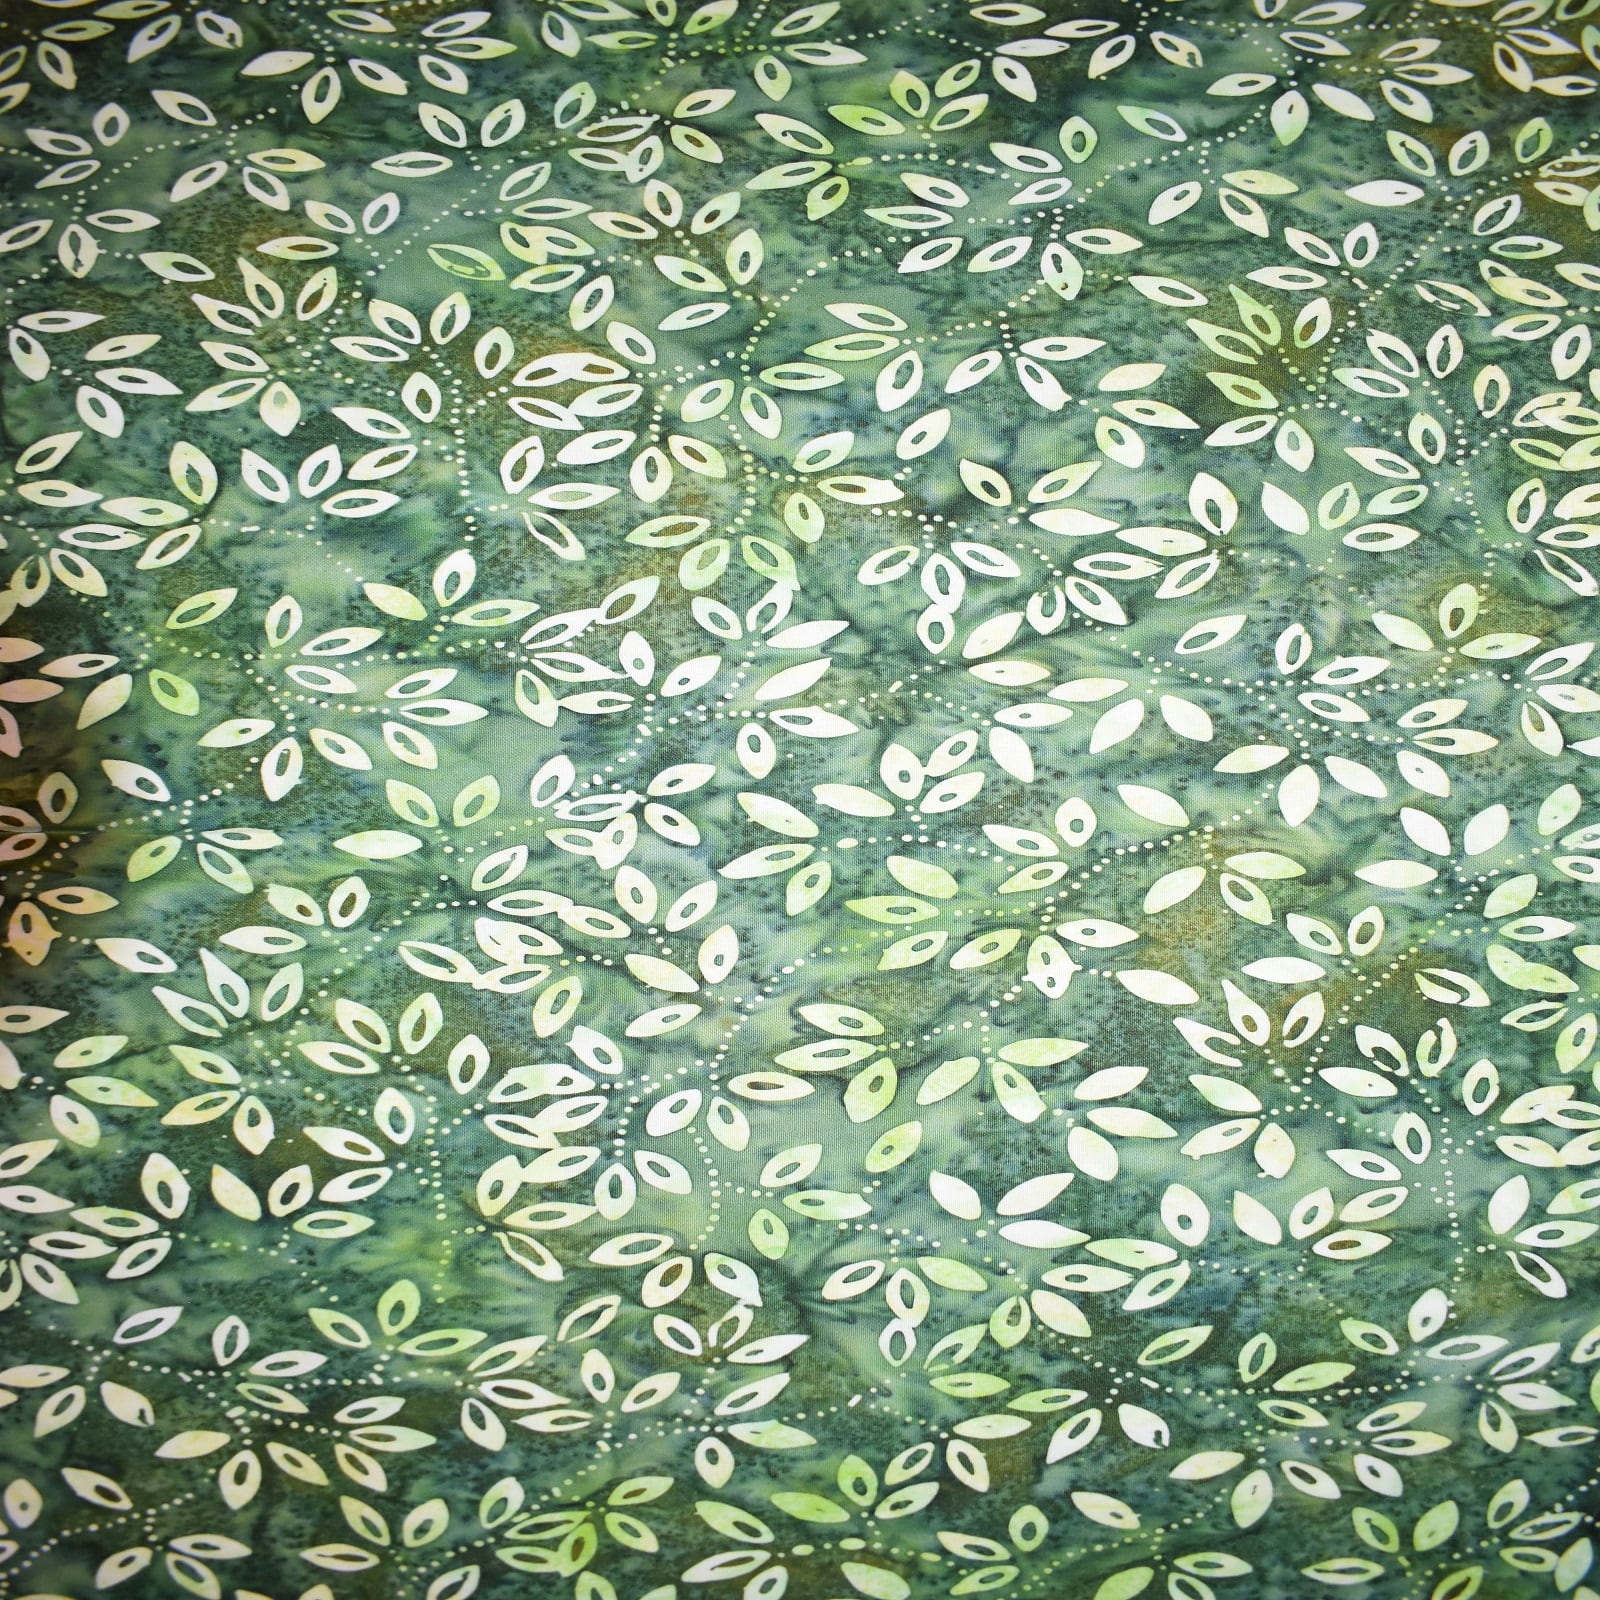 Premium Indonesian Batik Green Leaves Fabric